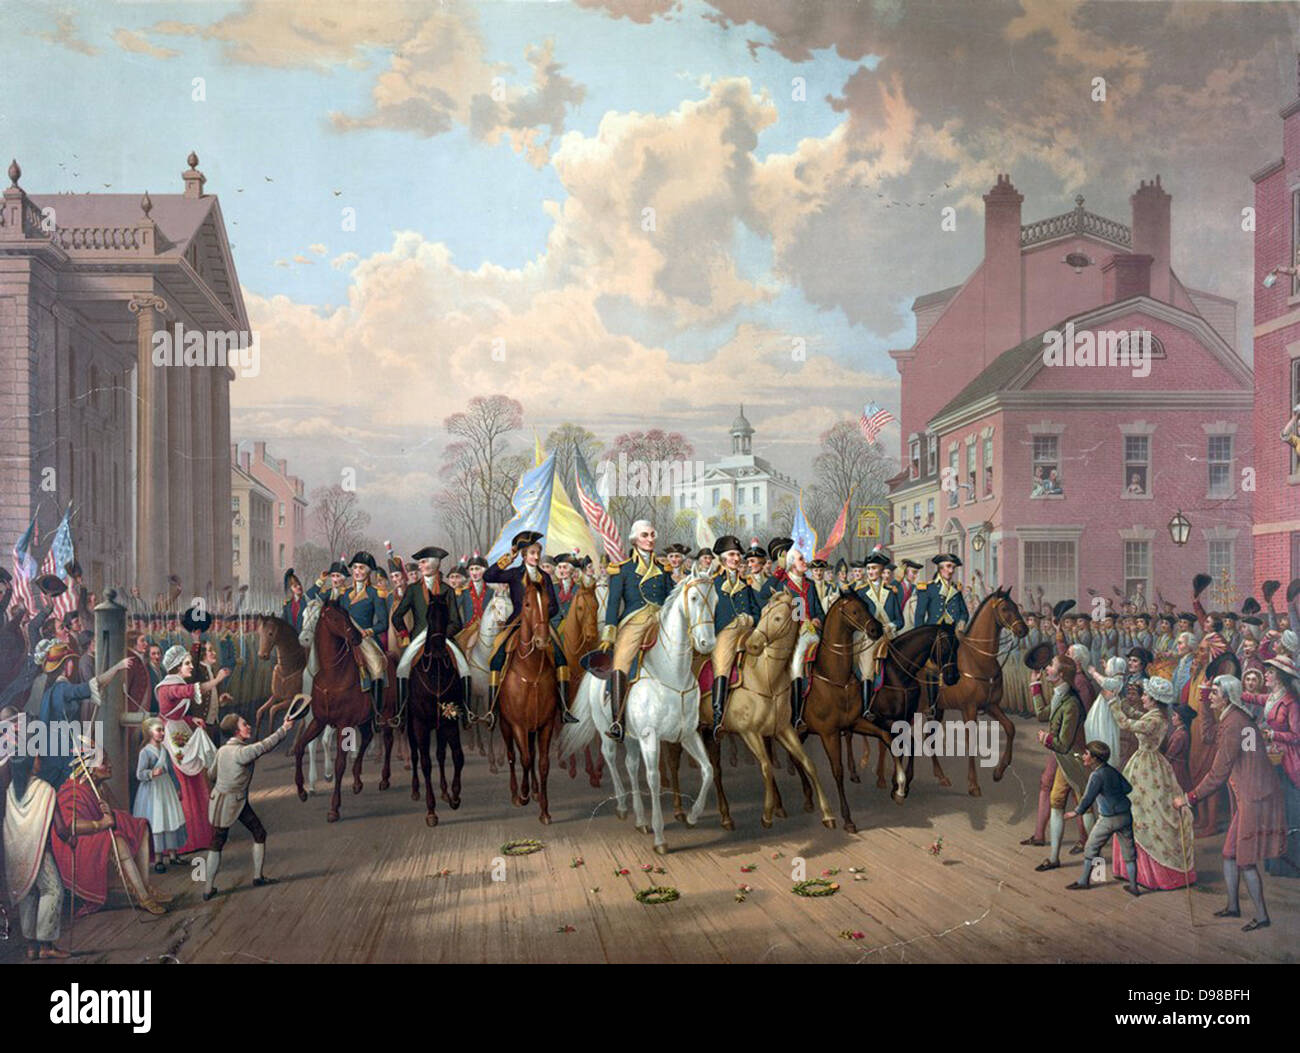 La guerre révolutionnaire de 1775-1783 (Guerre d'Indépendance américaine) : George Washington à cheval en triomphe dans les rues de Boston après 11 mois de siège a pris fin avec le retrait (évacuation) des forces britanniques. Chromolithographie 1879. Banque D'Images